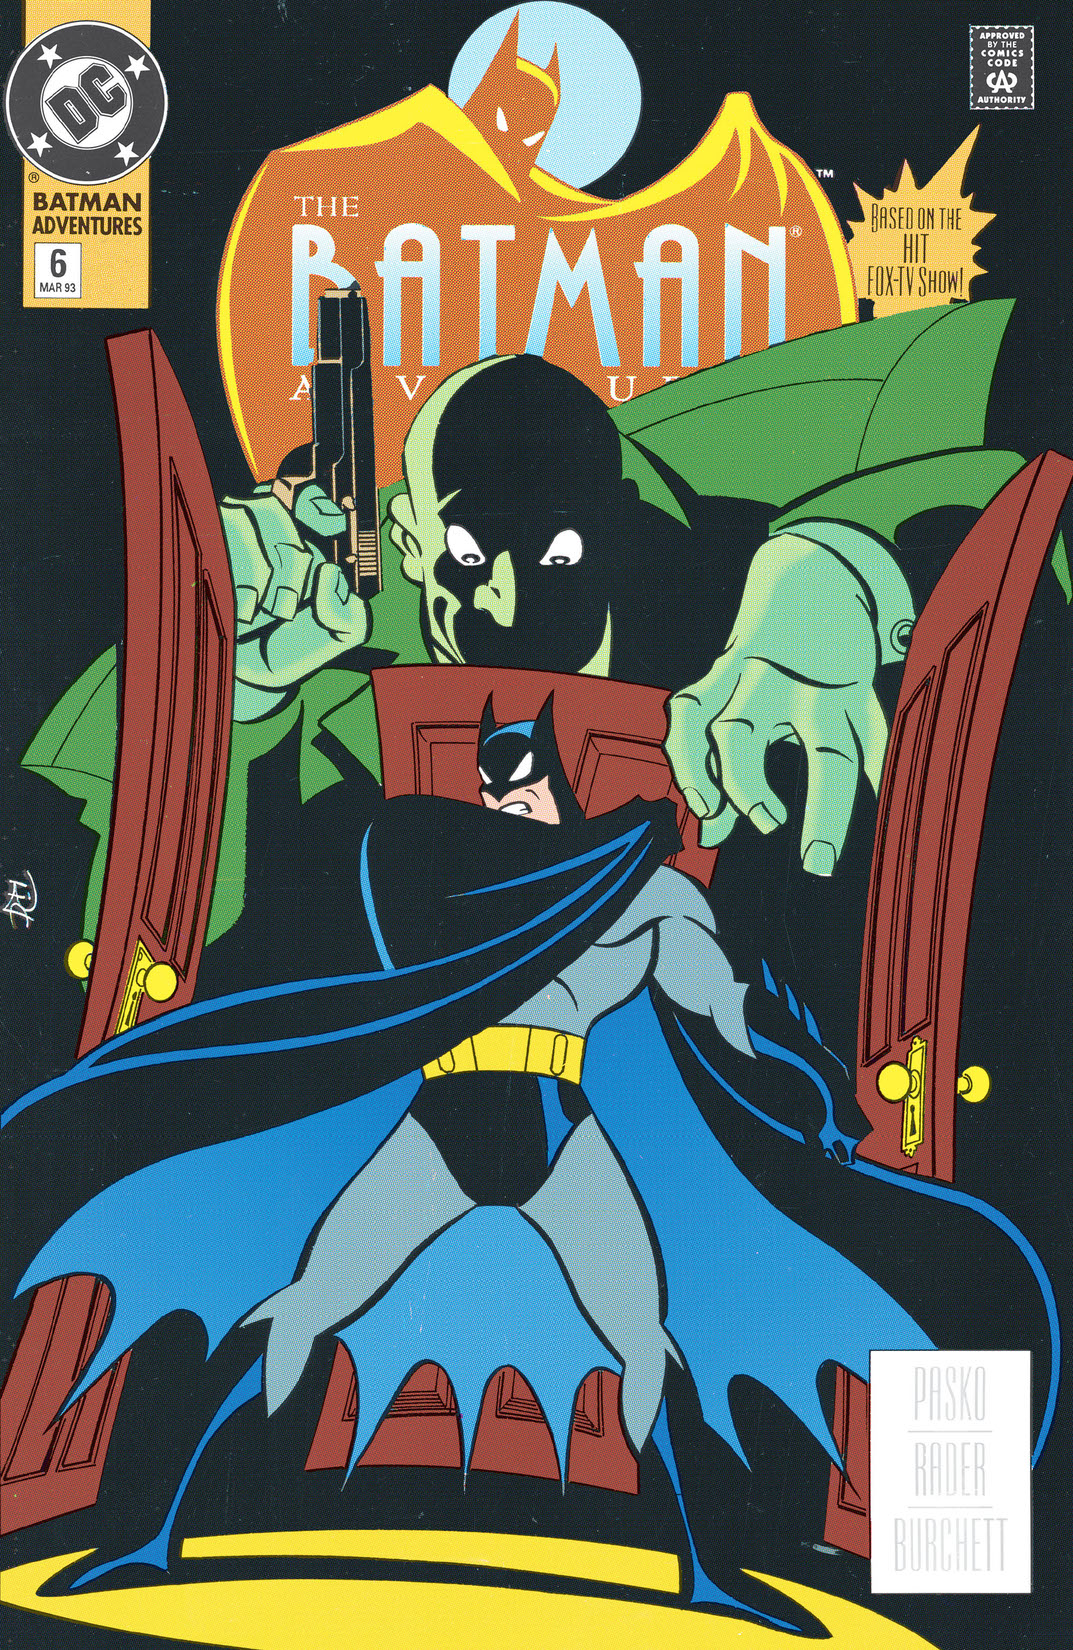 The Batman Adventures #6 preview images